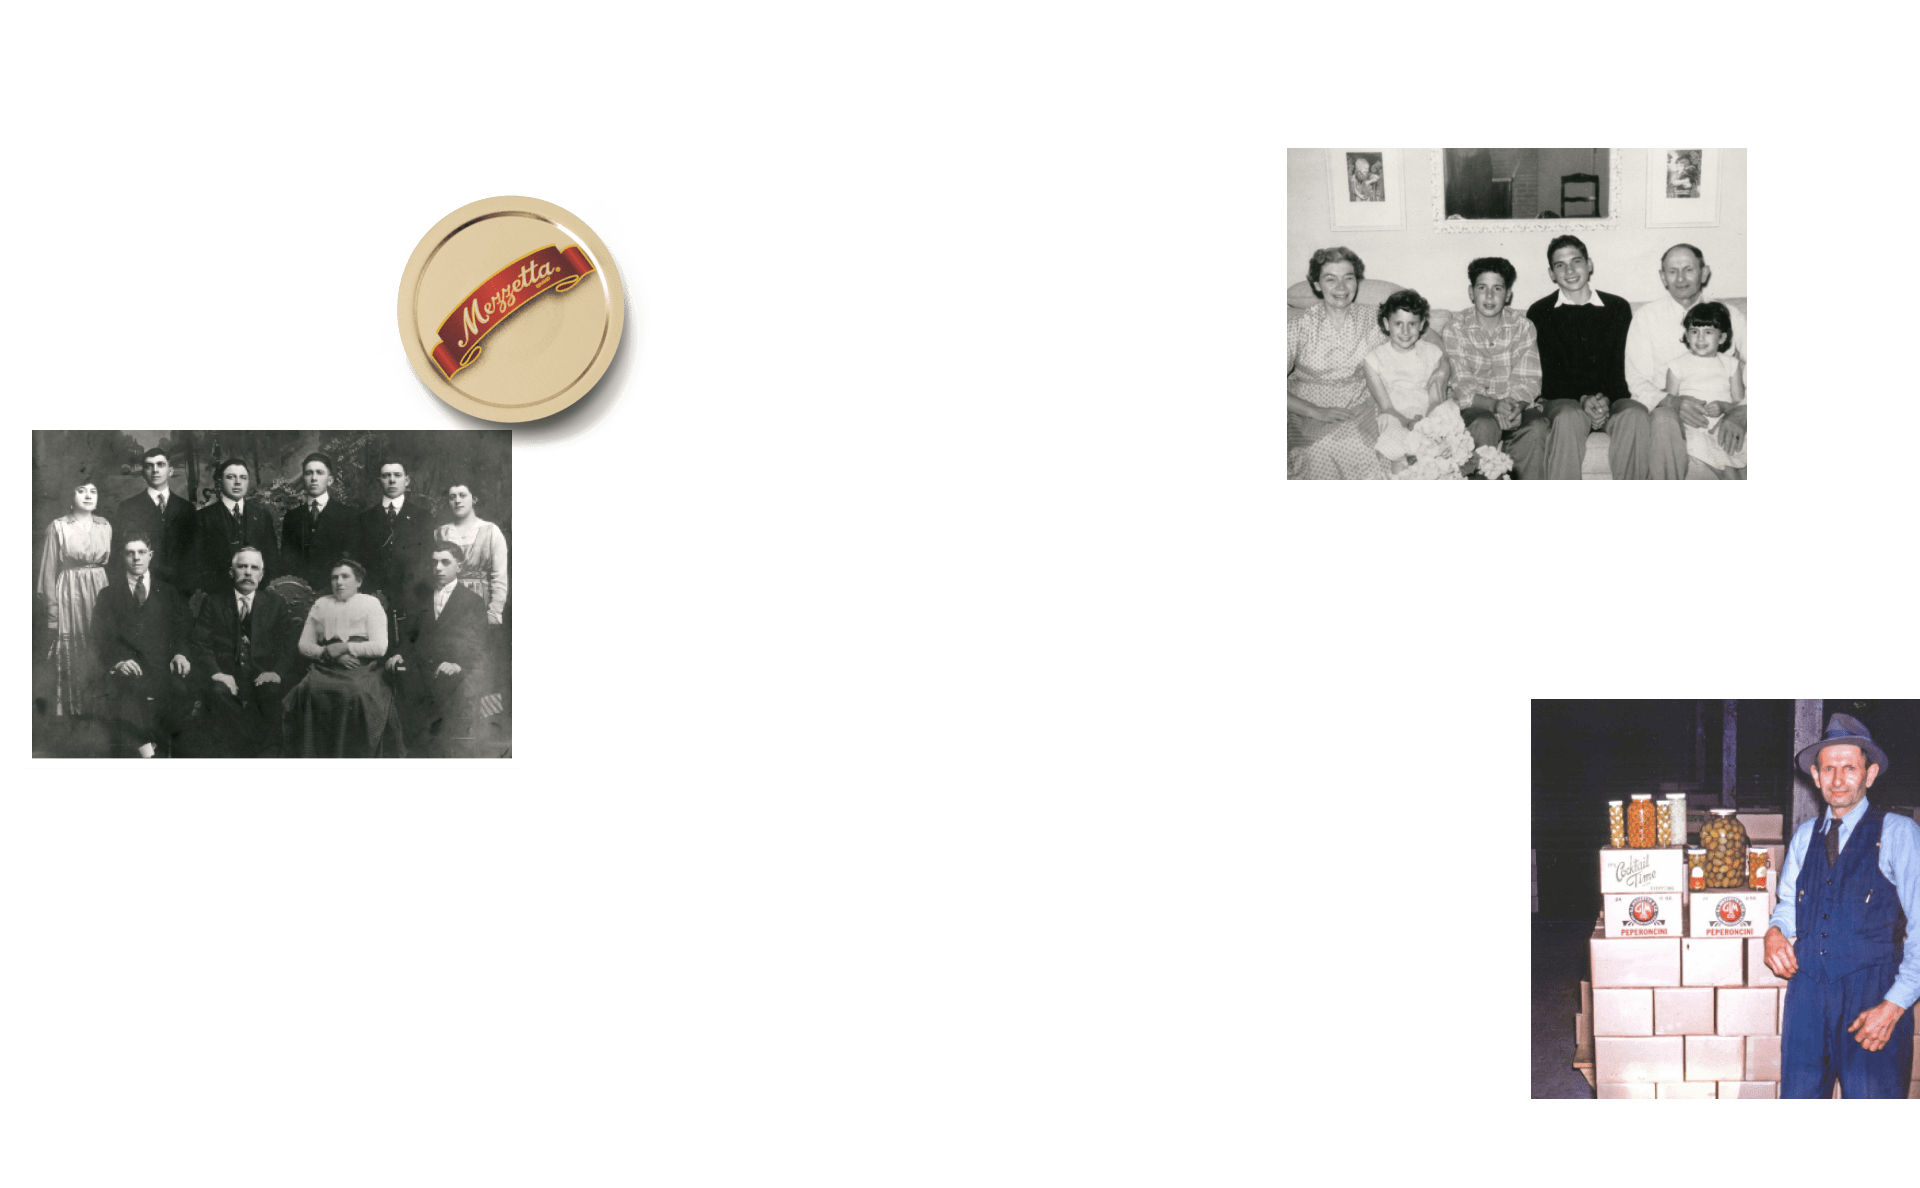 Vintage photos of the Mezzetta family